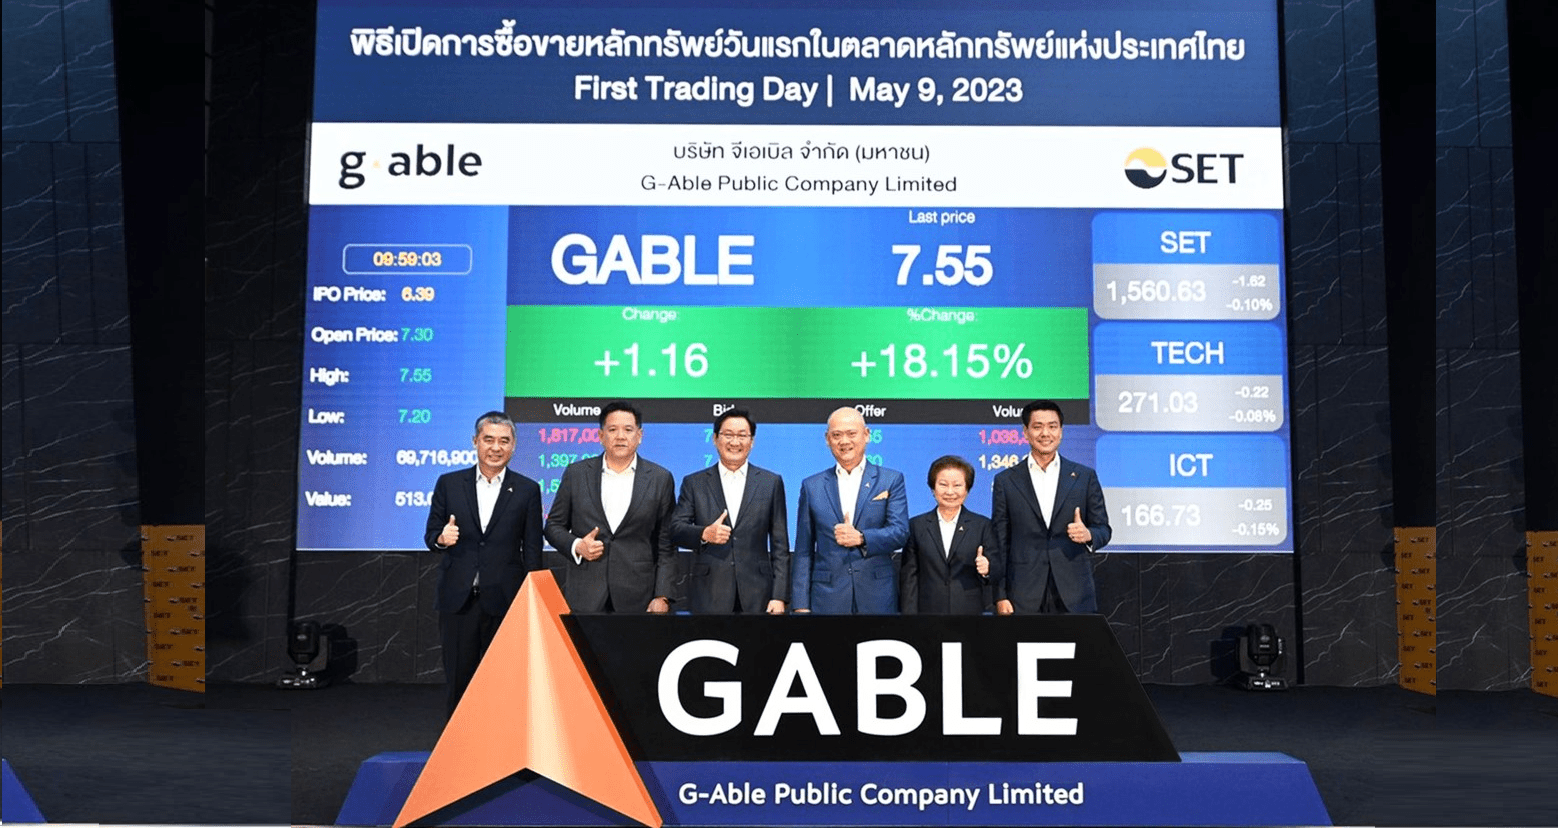 GABLE ประสบความสำเร็จเข้าซื้อขายวันแรกราคาเปิดพุ่งเหนือจอง 14.24%